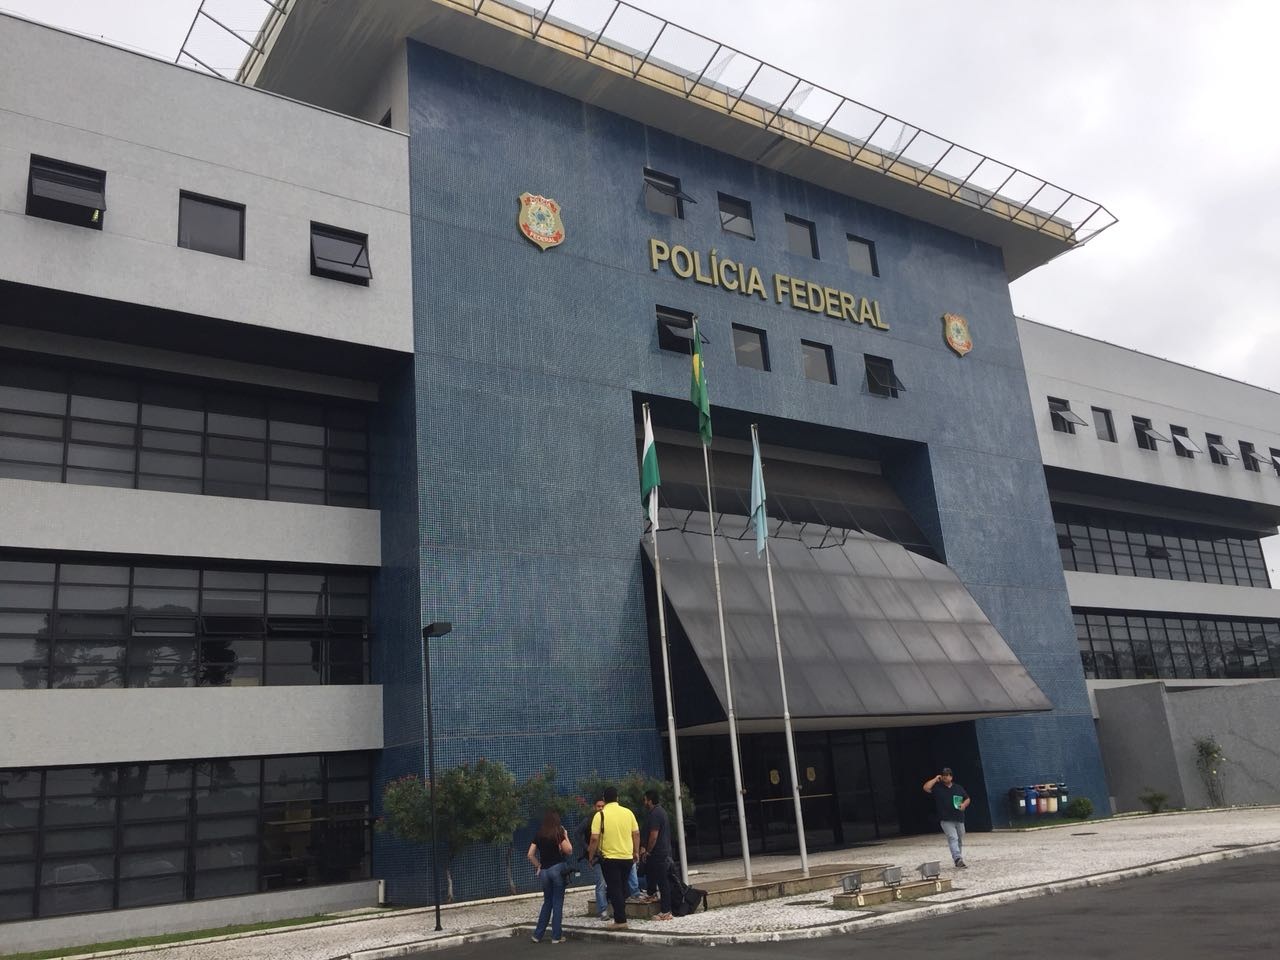  Polícia Federal faz atendimento à emissão e retirada de passaporte em horários diferenciados em janeiro